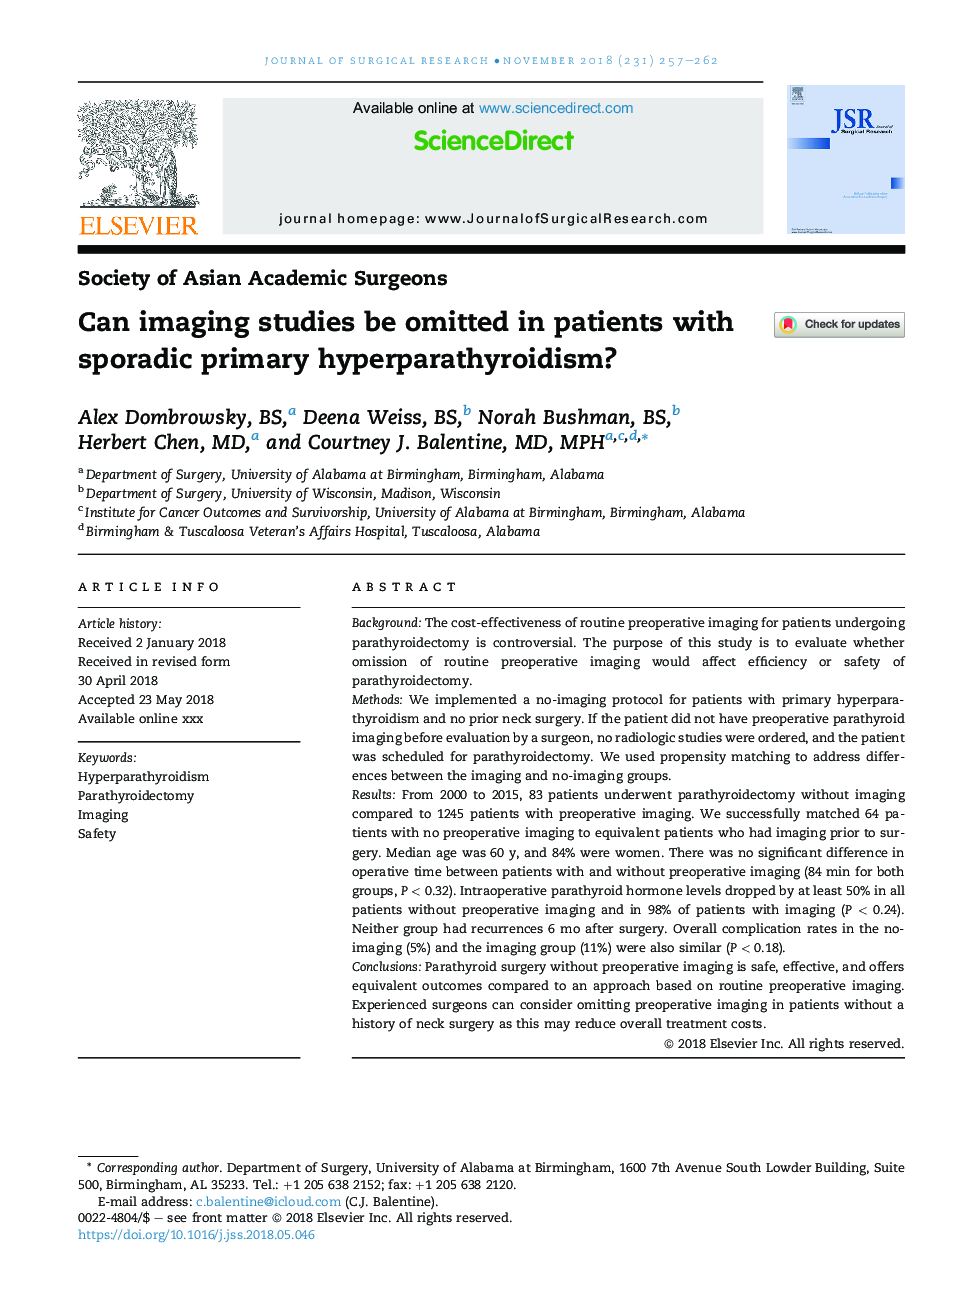 آیا می توان مطالعات تصویربرداری را در بیماران مبتلا به هیپرپاراتیروئیدیسم اولیه پریودیکال حذف کرد؟ 